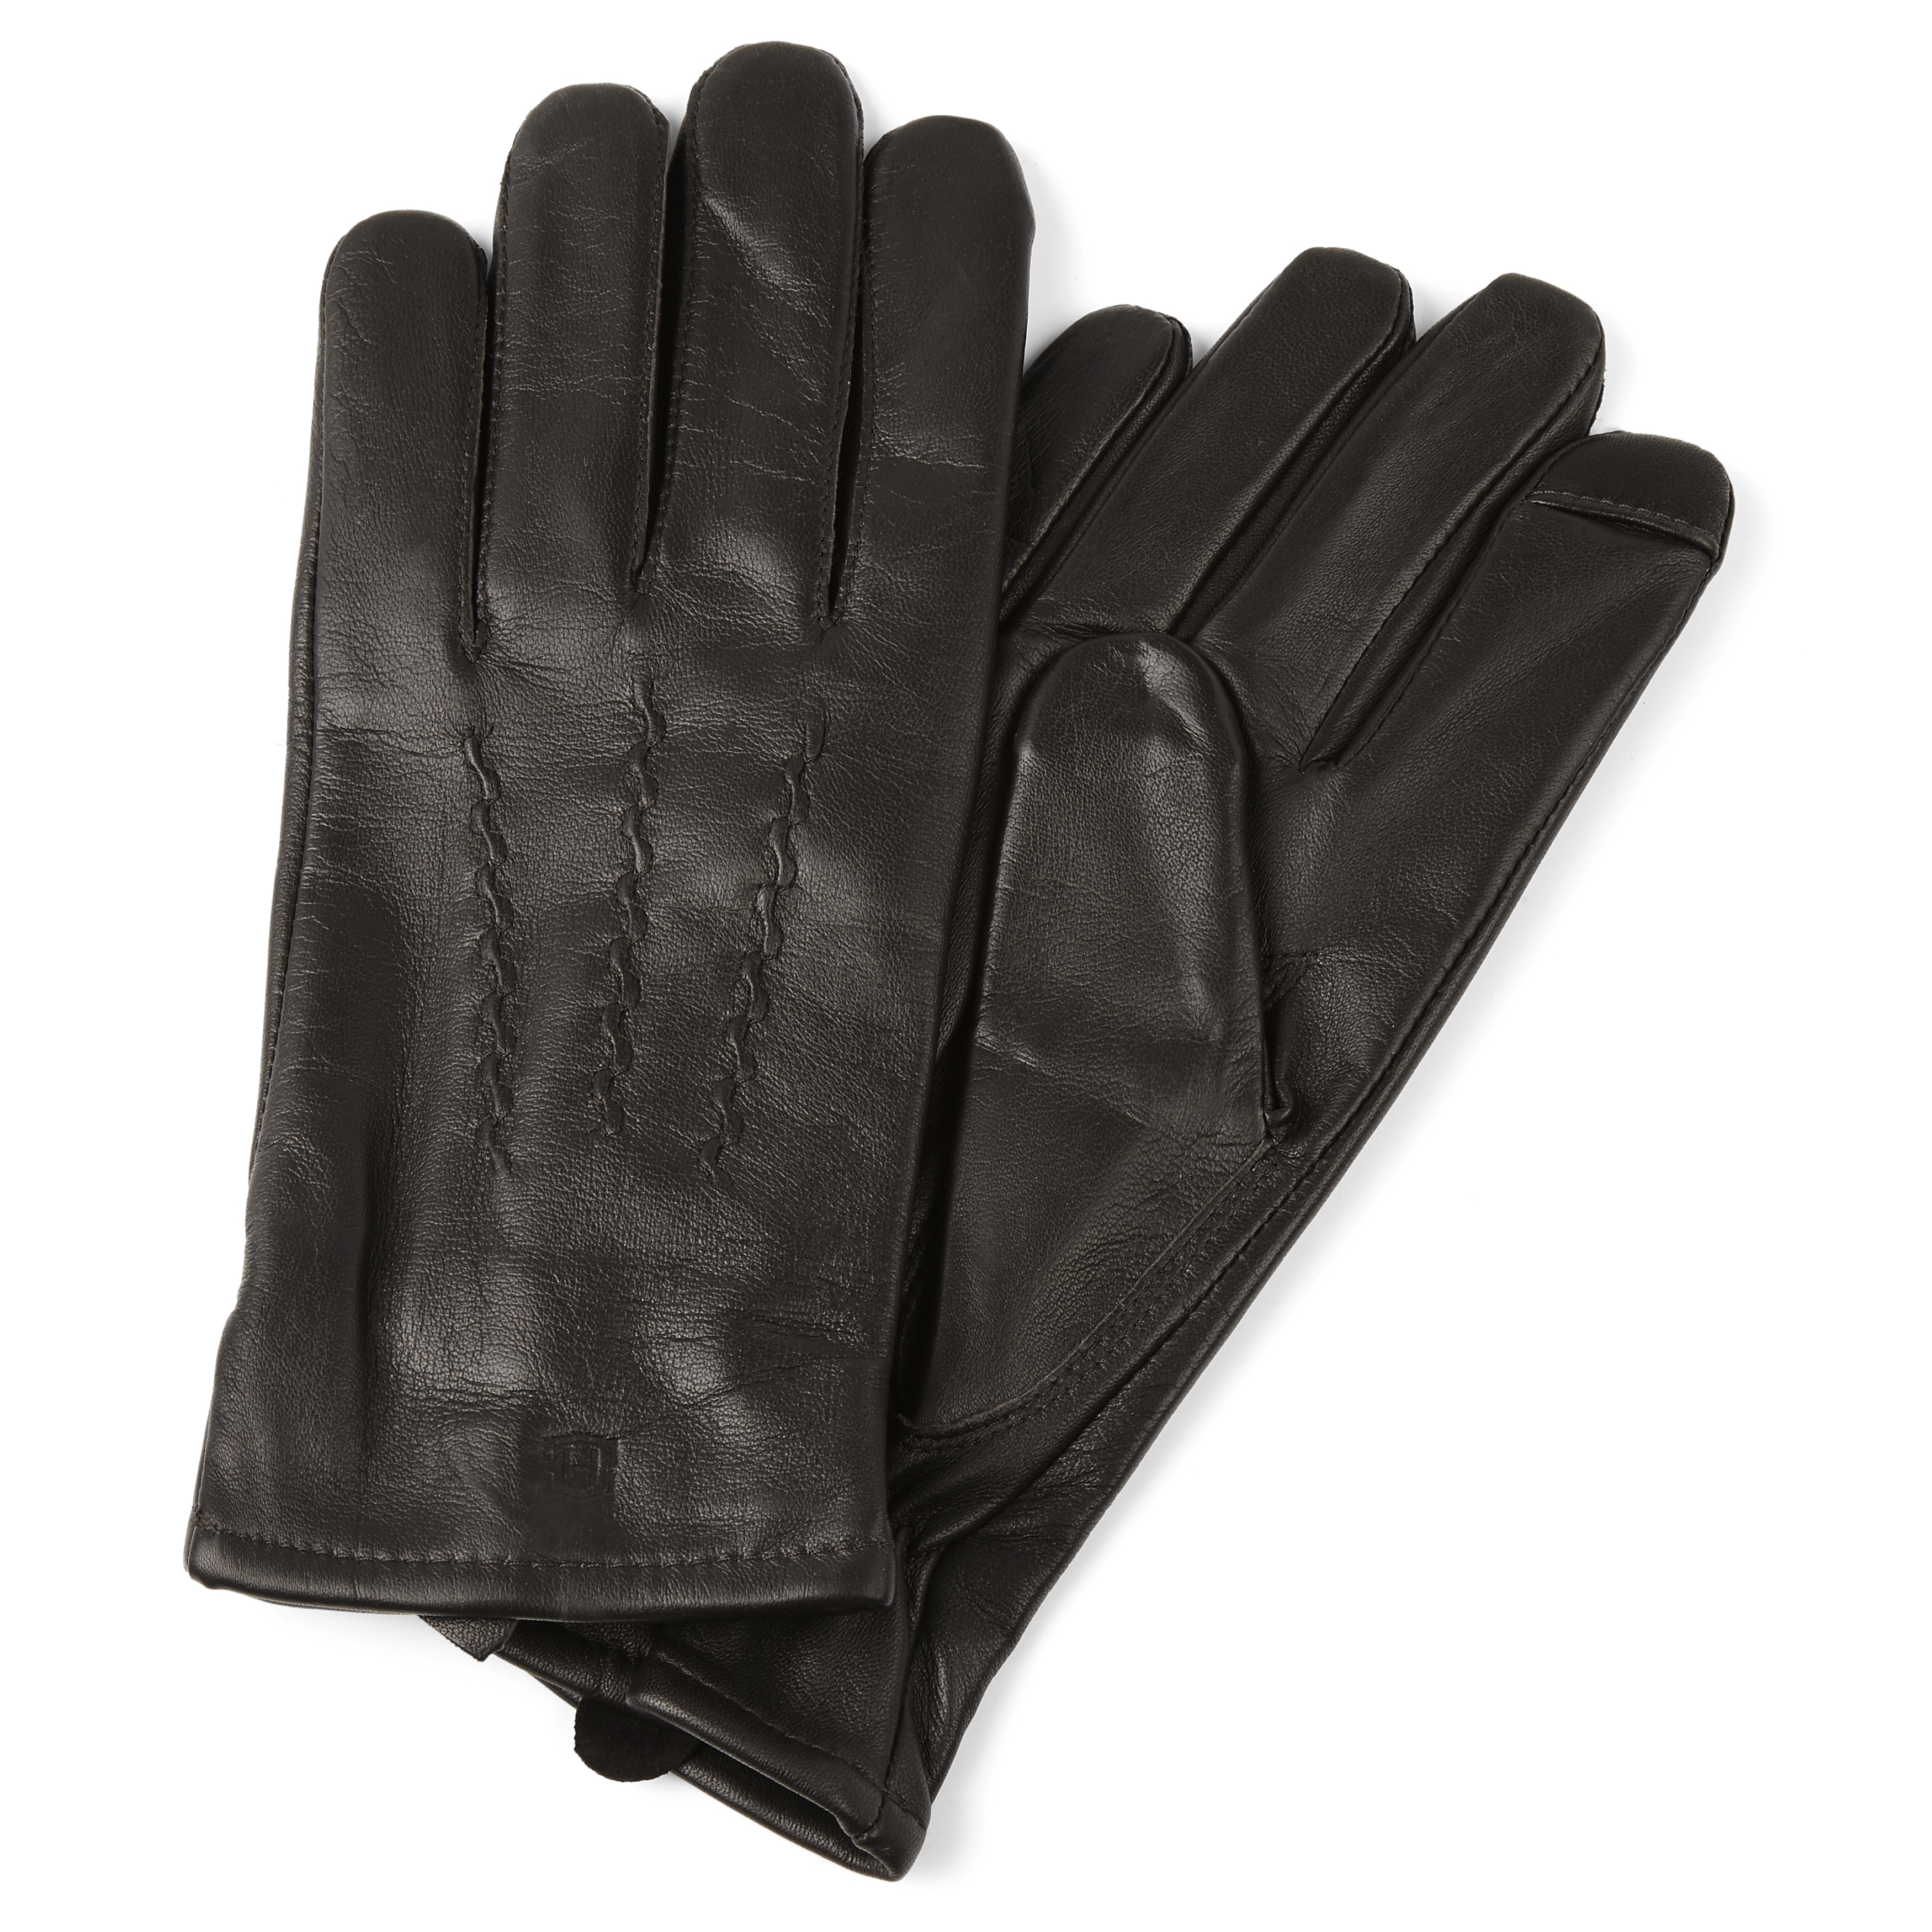 Guantes texturas negro Mia Black by Kessler - Tienda online de guantes